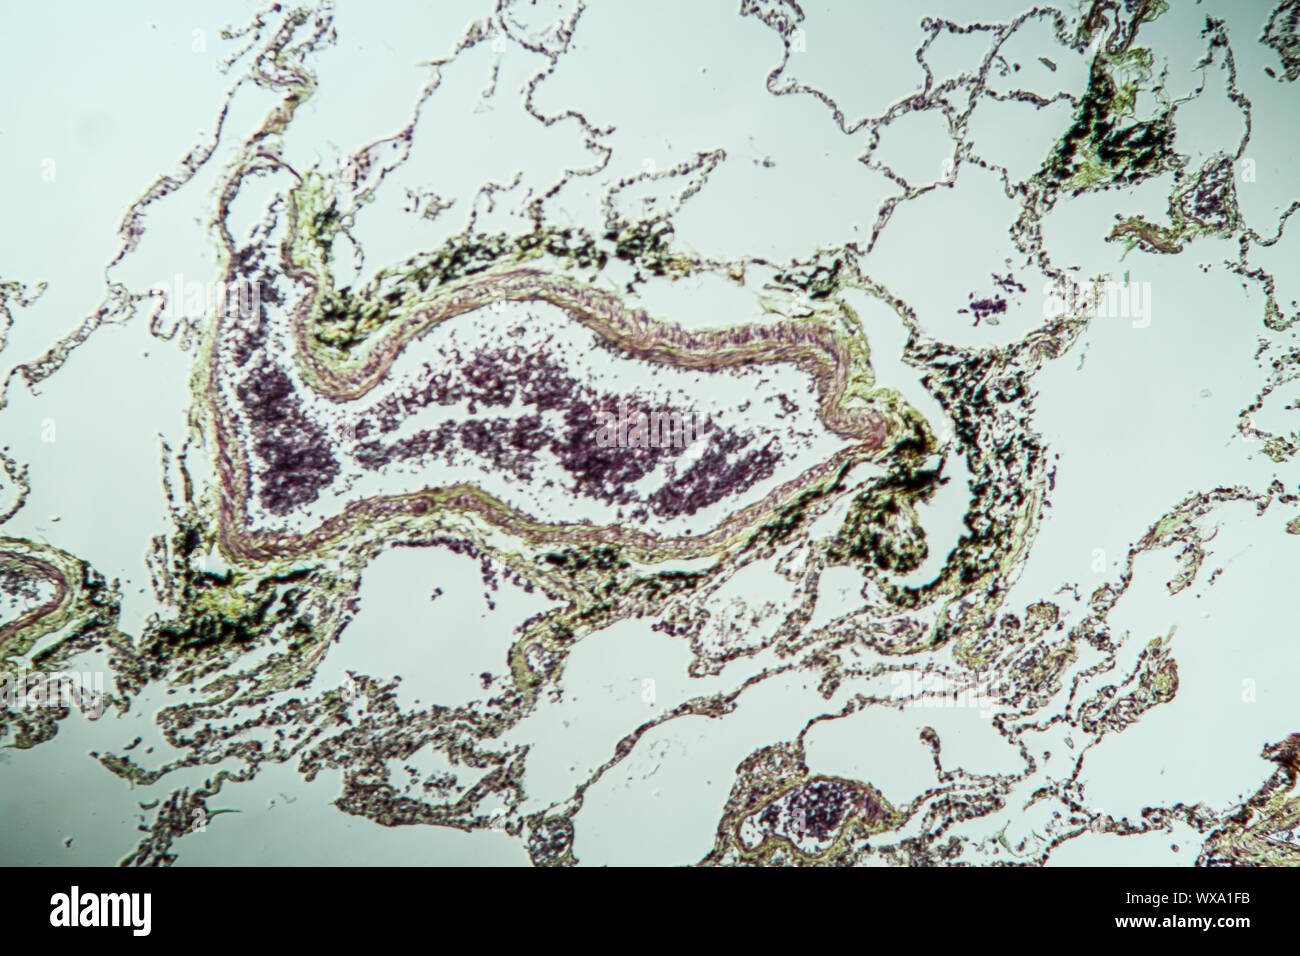 Les tissus pulmonaires sous le microscope 100x Banque D'Images